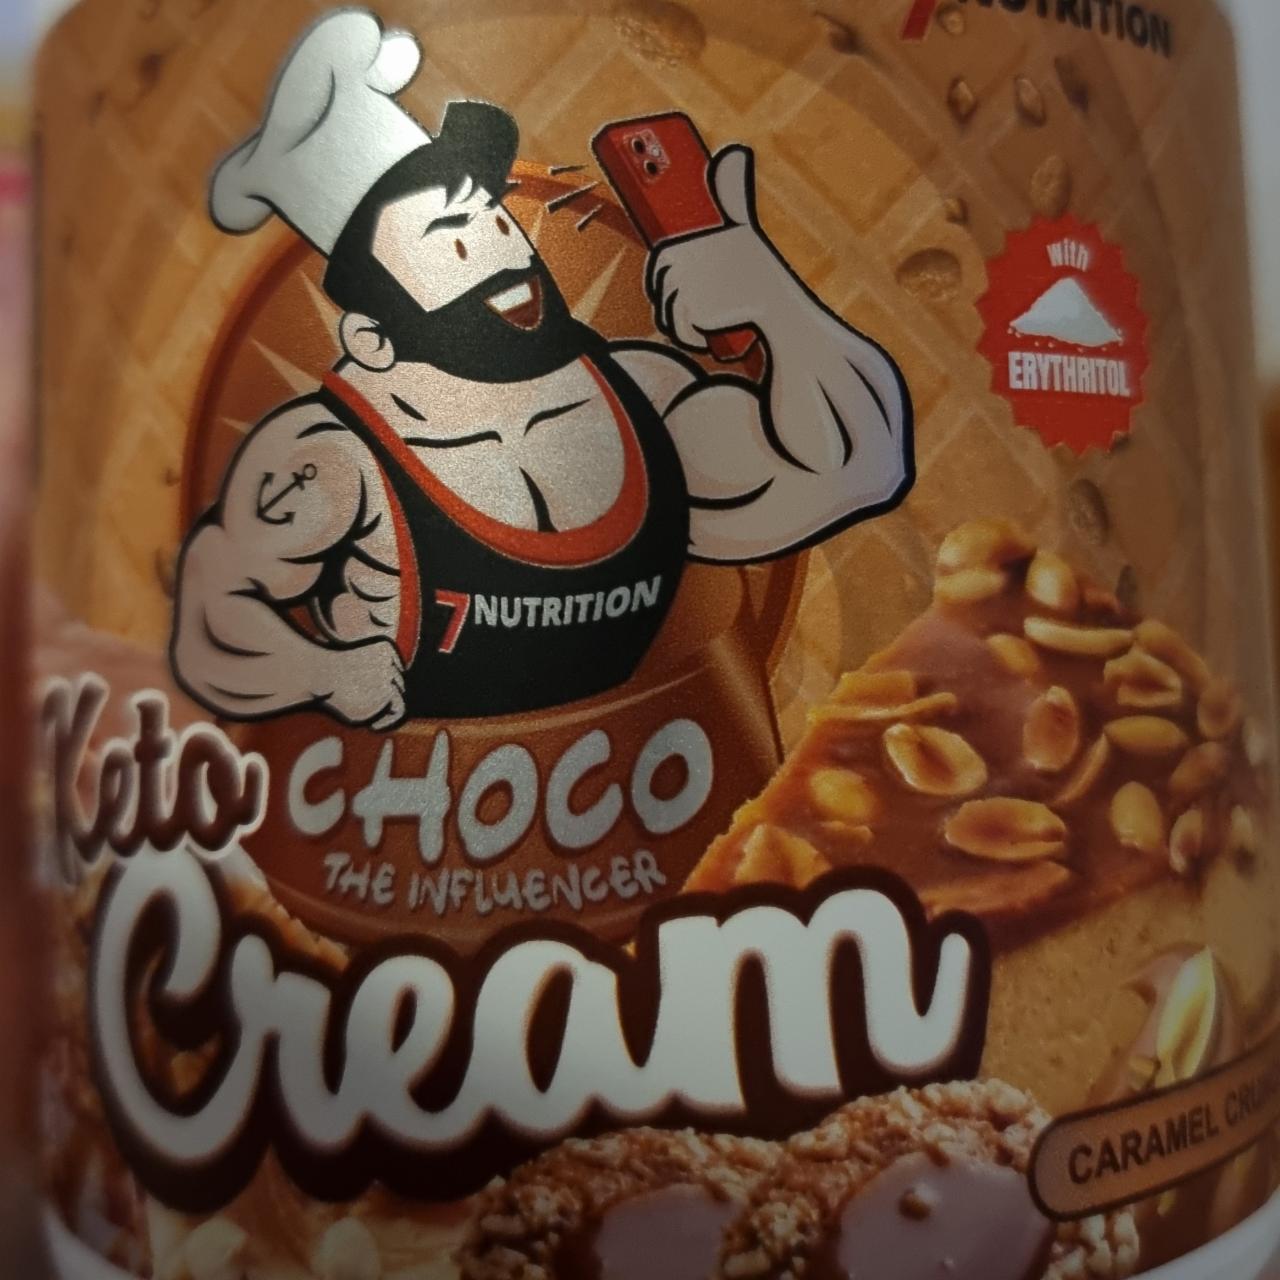 Fotografie - Keto Choco Cream Caramel Crunch 7Nutrition